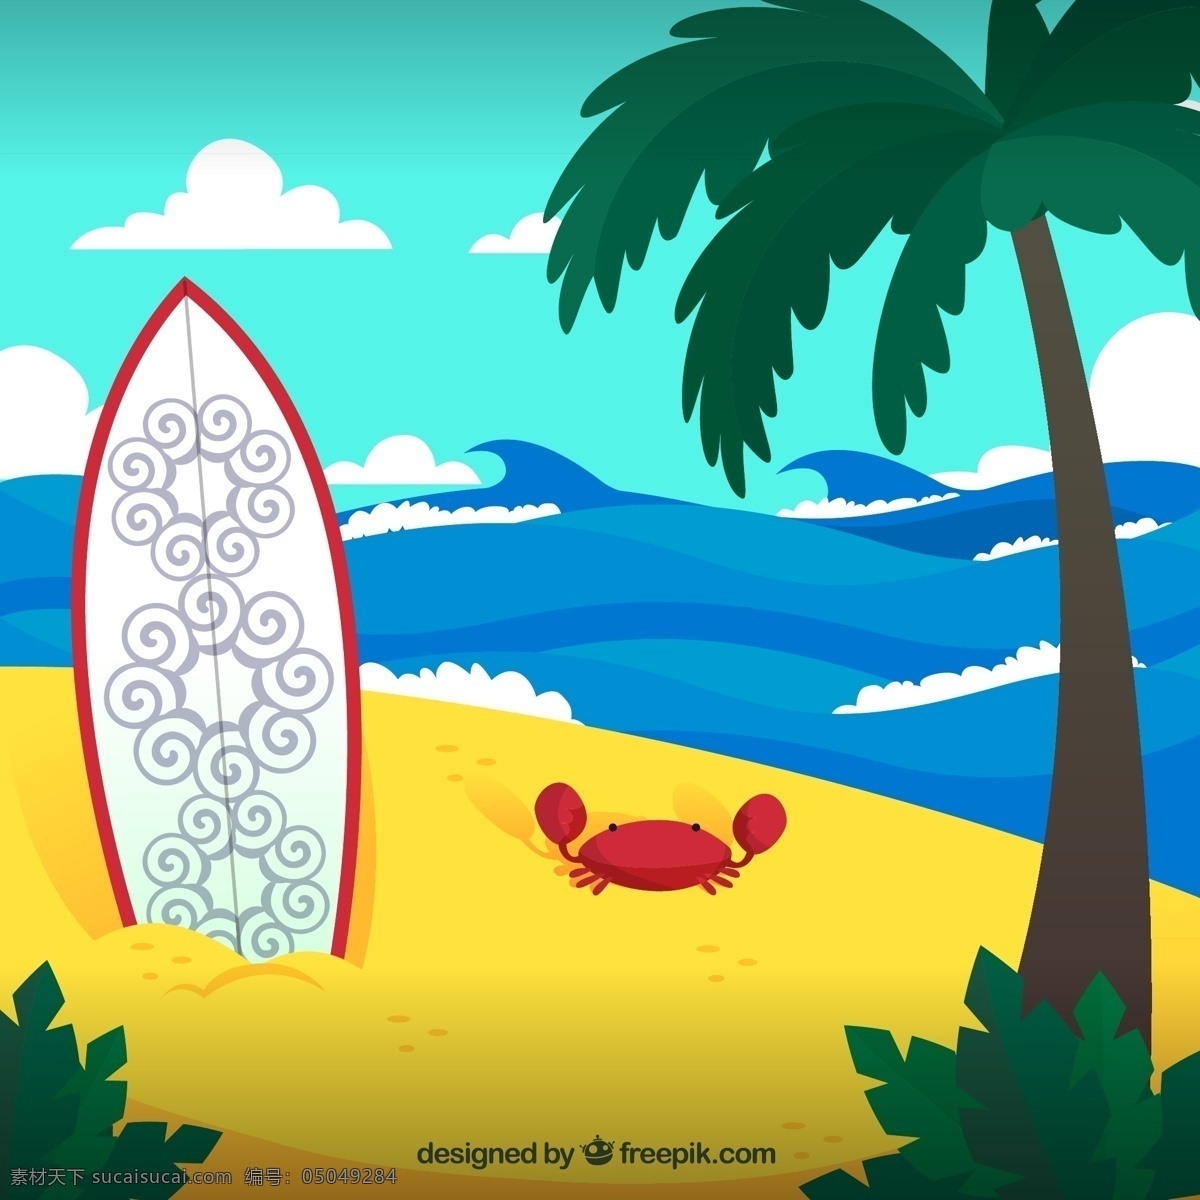 创意 沙滩 冲浪板 螃蟹 插画 矢量 椰子树 大海 花纹 度假 夏季 云朵 天空 风景 矢量图